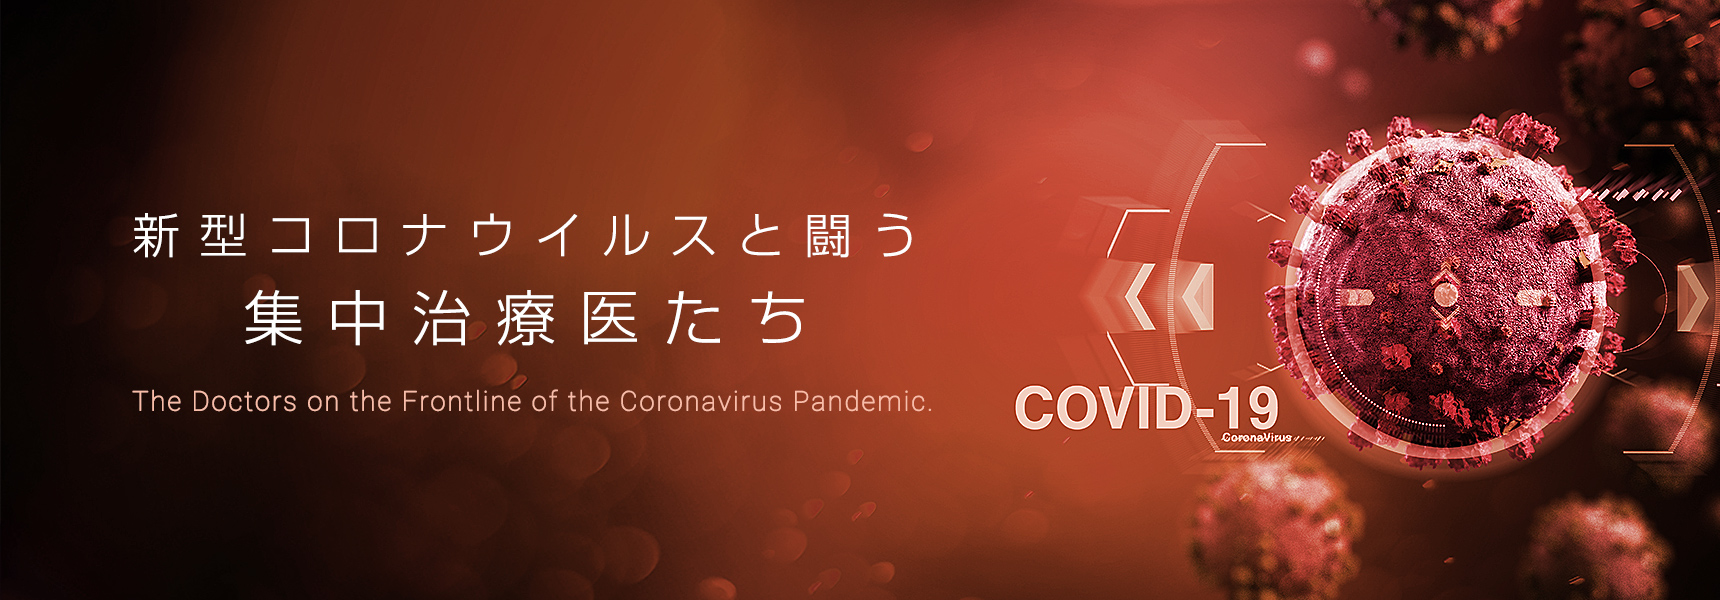 新型コロナウイルスと闘う集中治療医たち